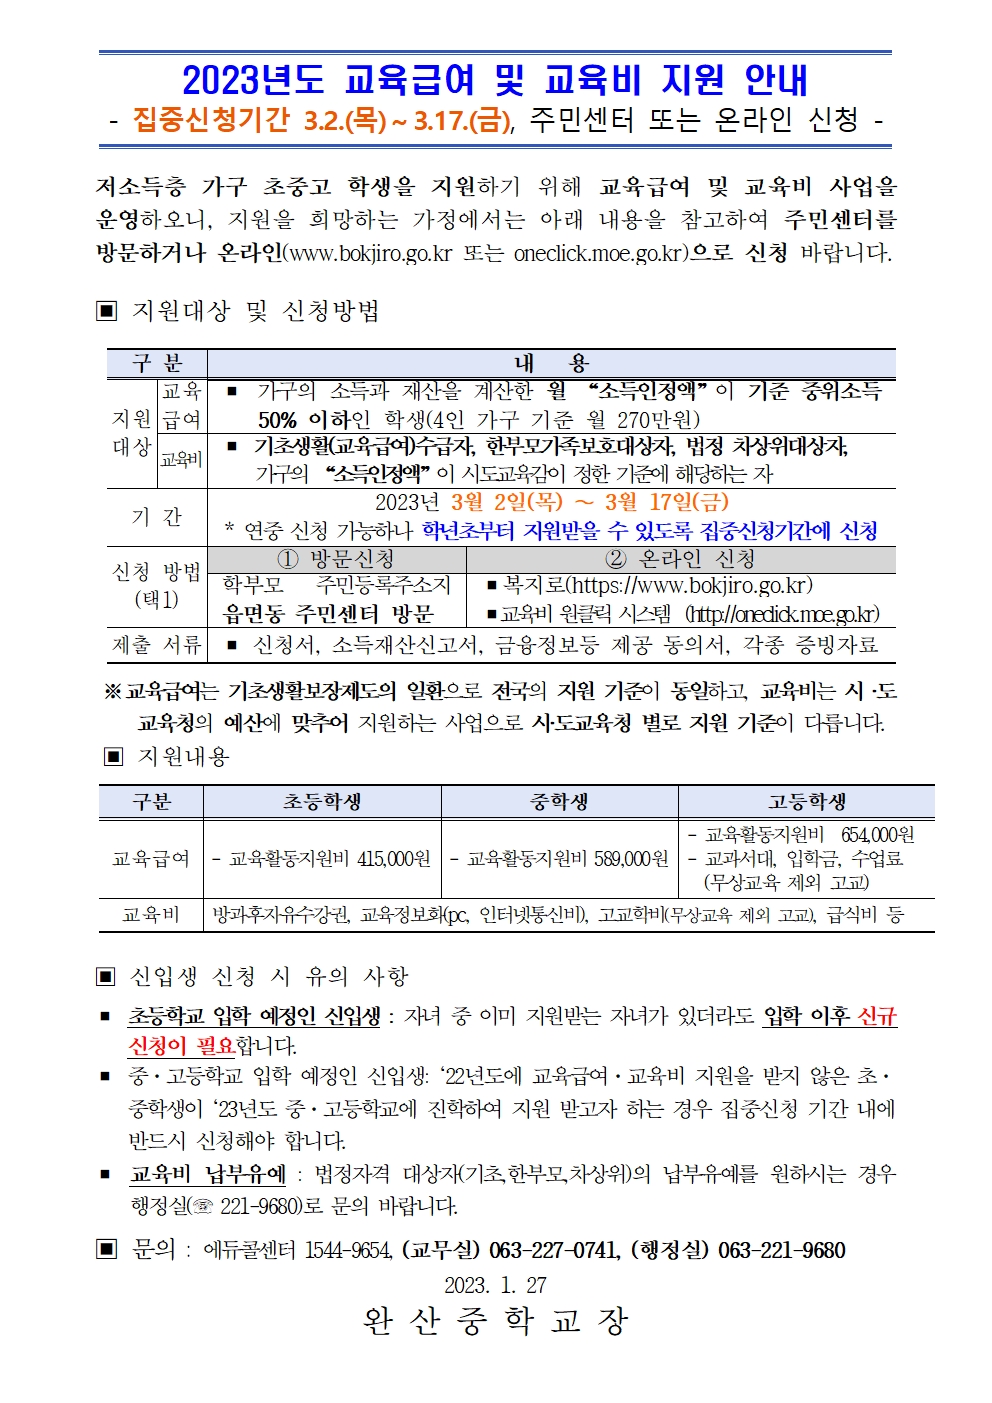 2023 교육급여 및 교육비 지원 가정통신문 안내문_예시001